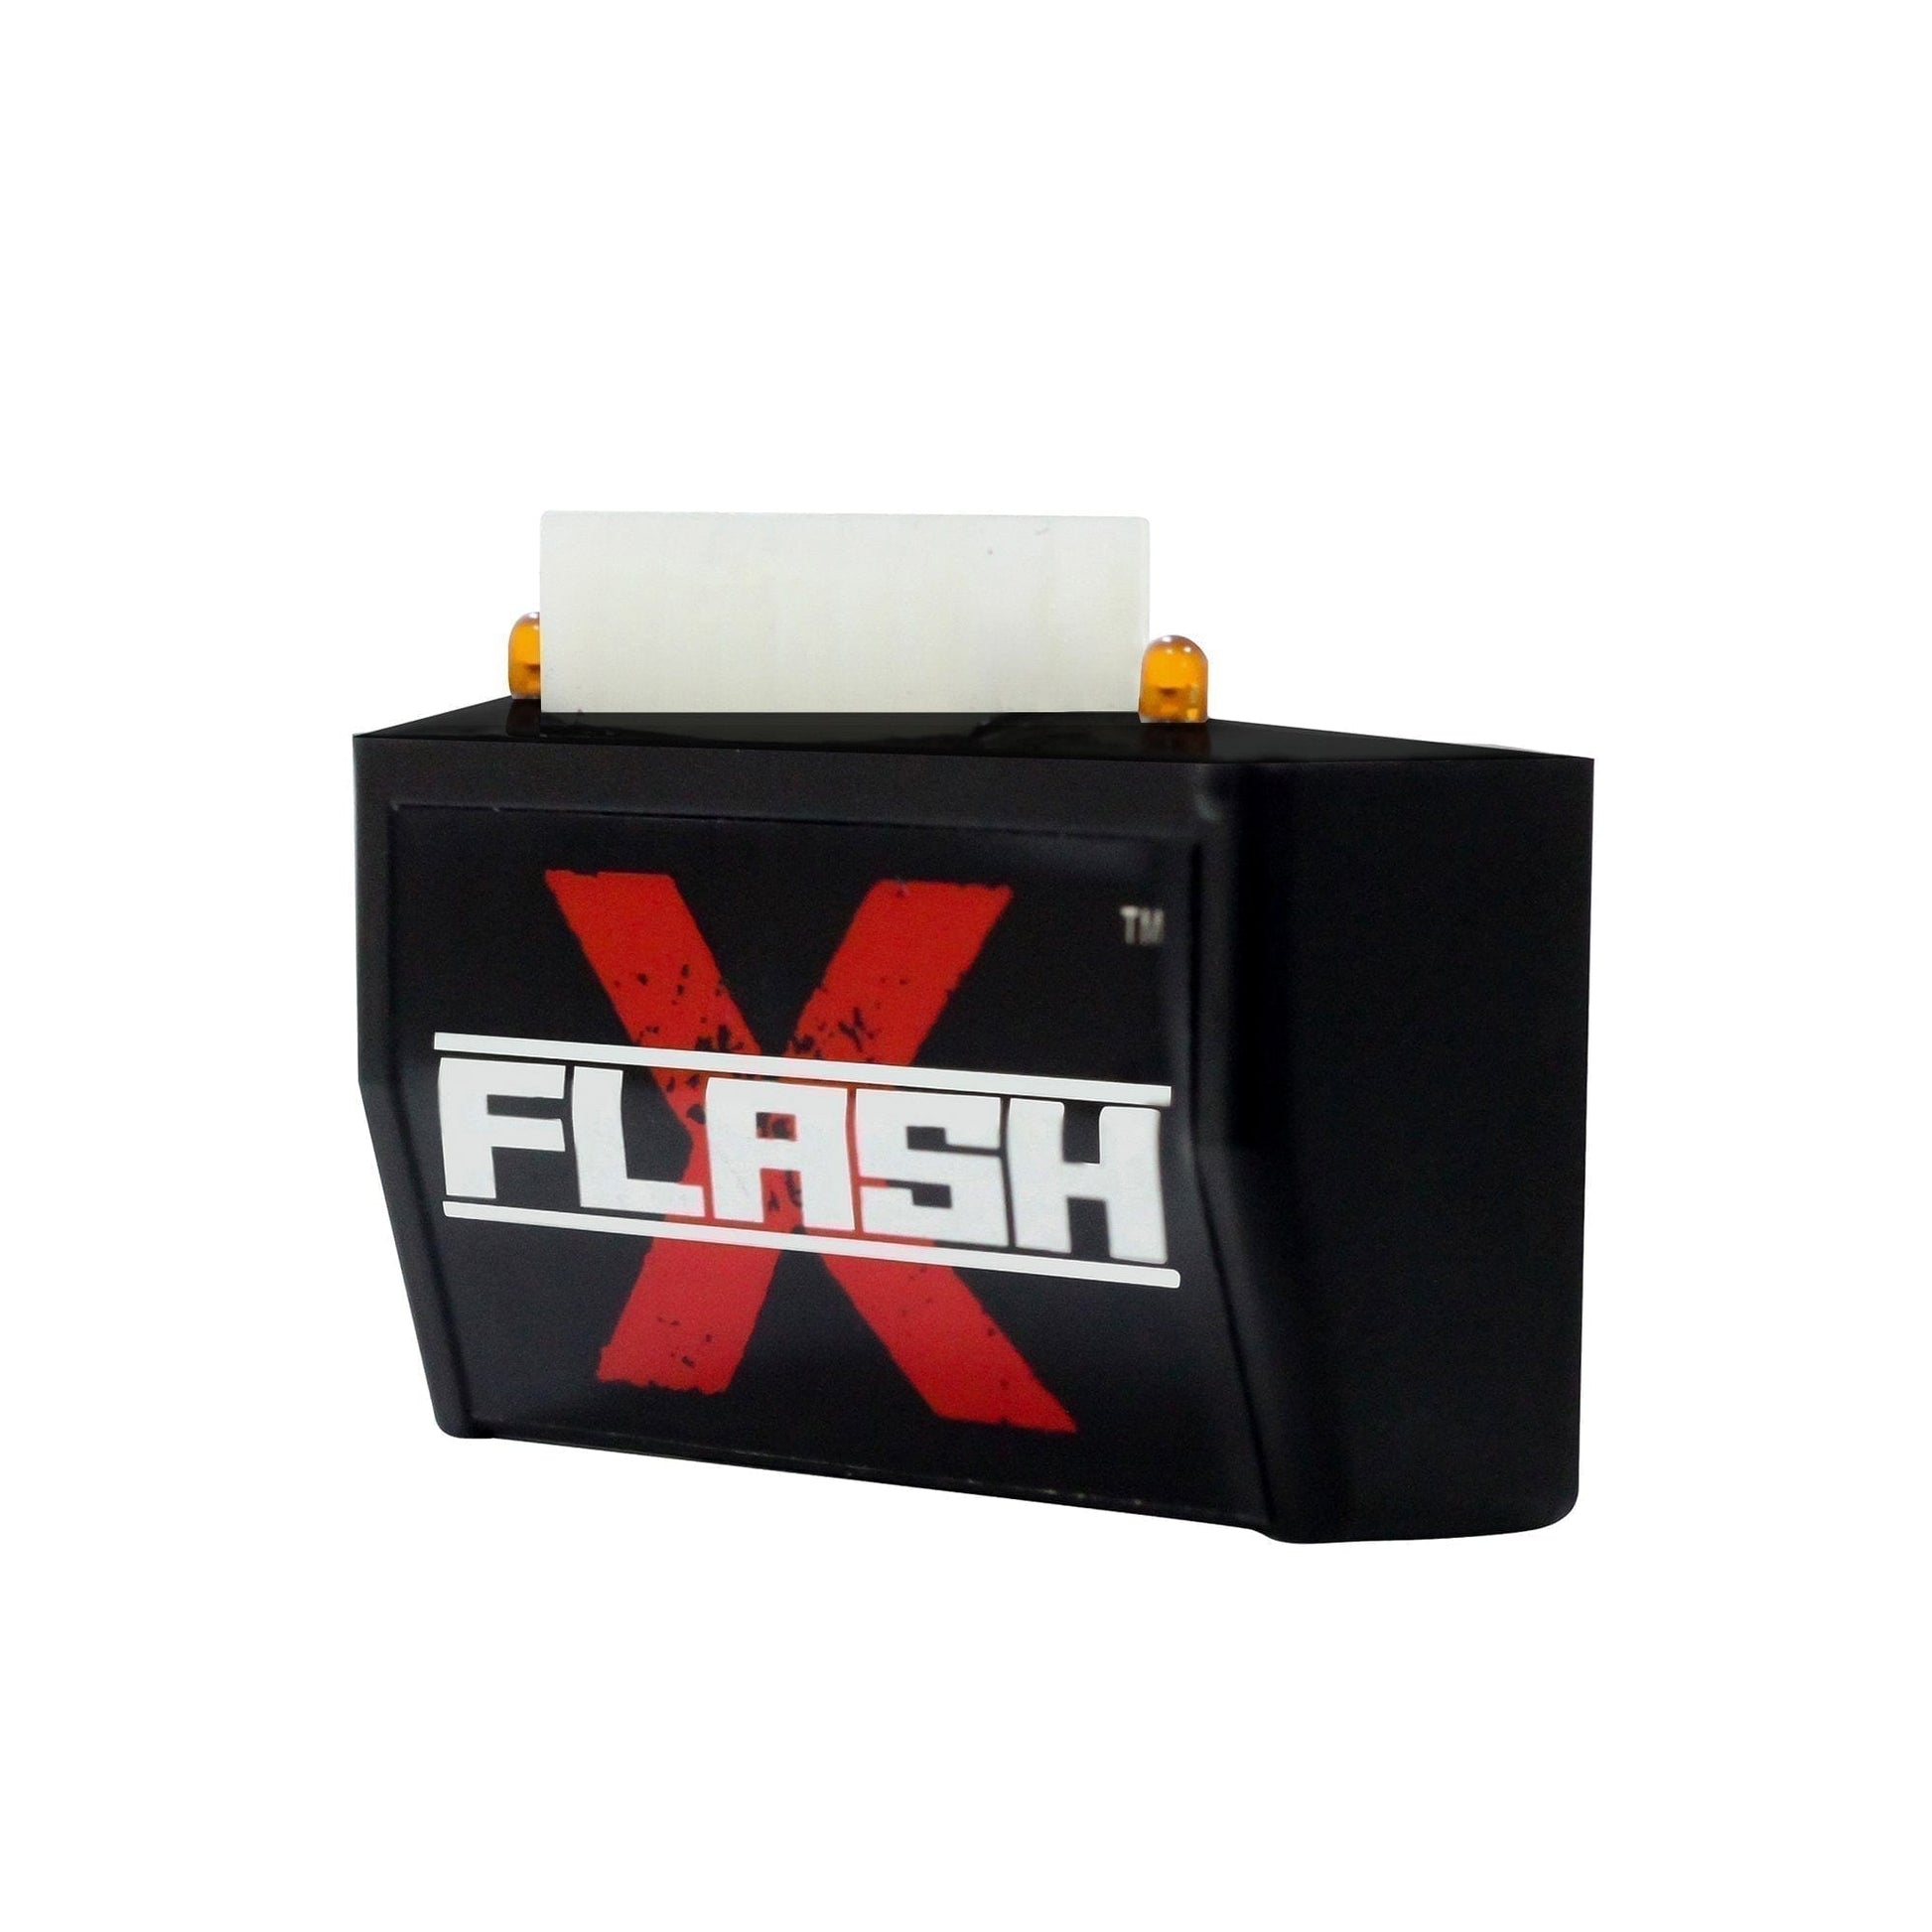 Destination Moto SUZUKI ACCESS 125 BS-6 Flash X Hazard Lights Flash Module, Blinker,Flasher